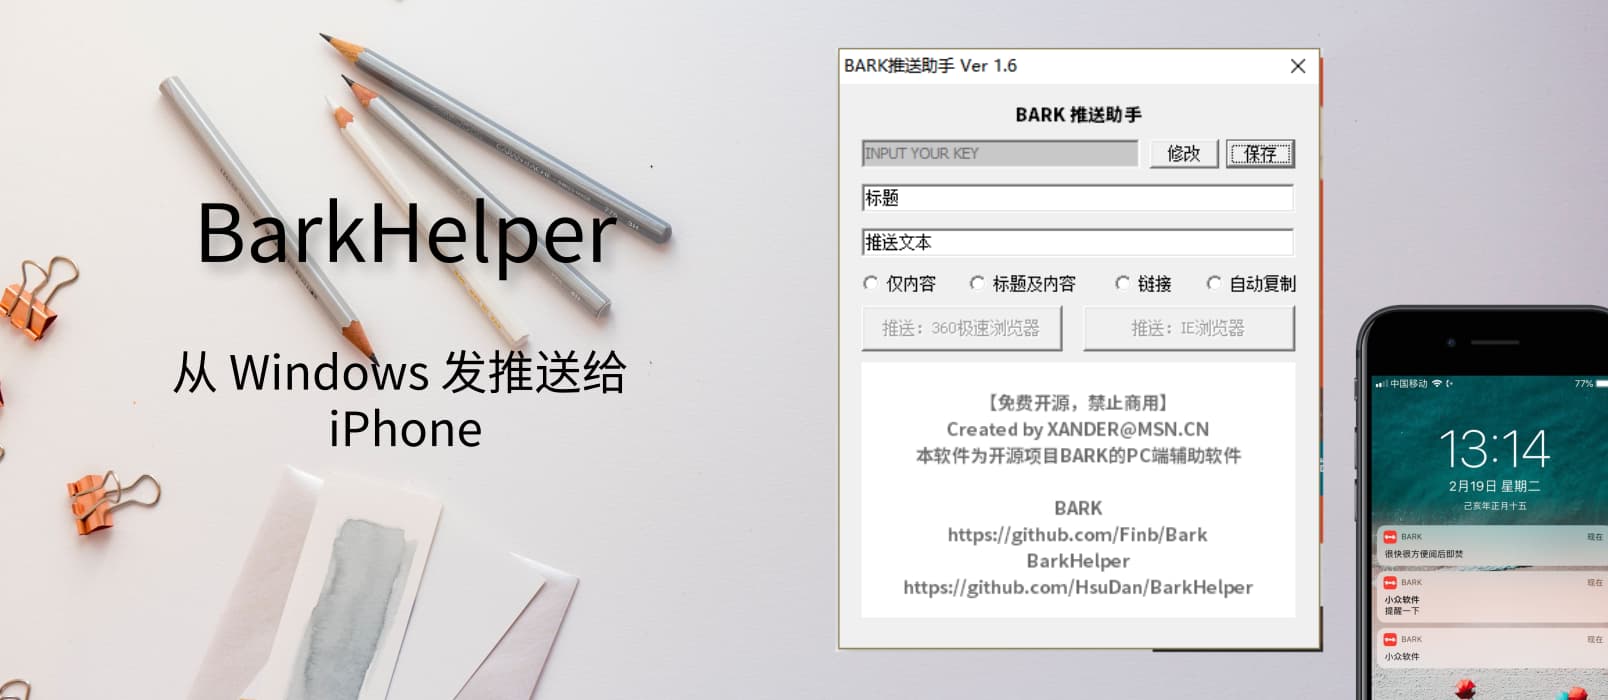 能给自己 iPhone 发推送的 Bark 有了 Windows 客户端：BarkHelper 1